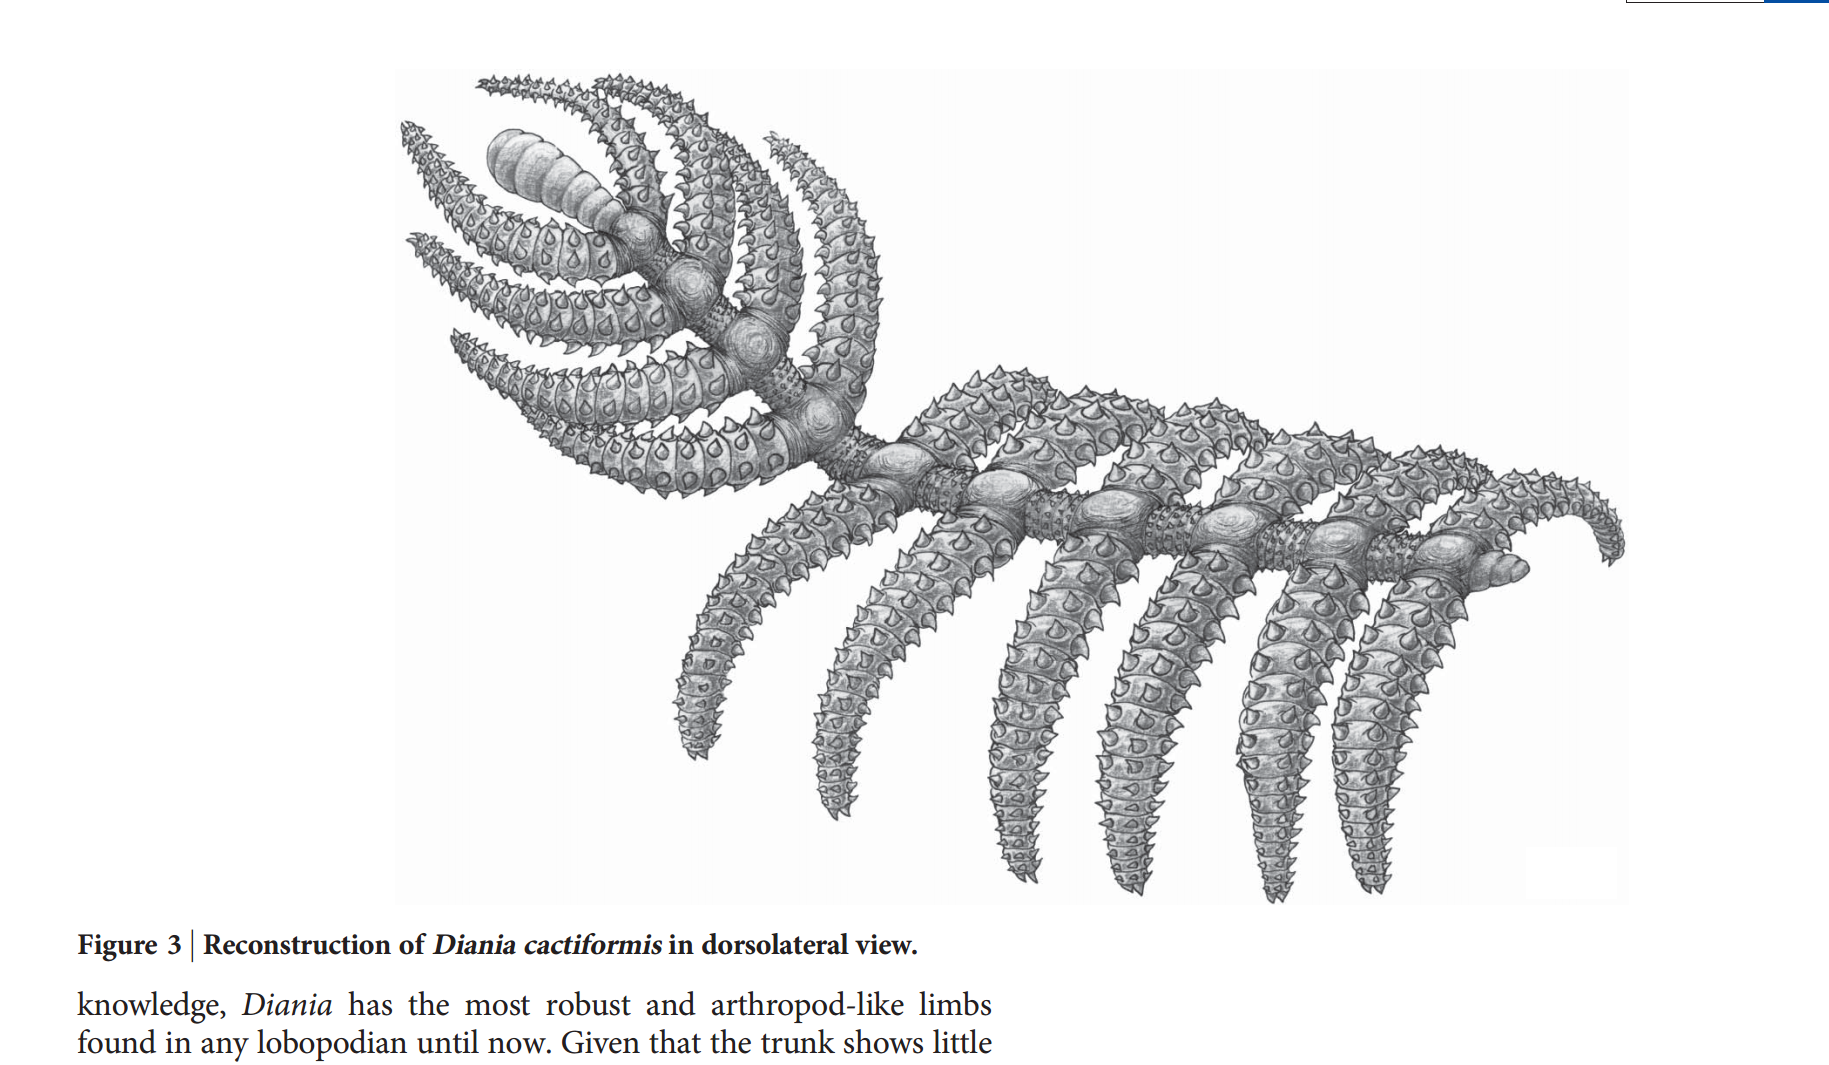 你说的恐虾纲和异虫纲应该分别是指dinocarida,xenusia.